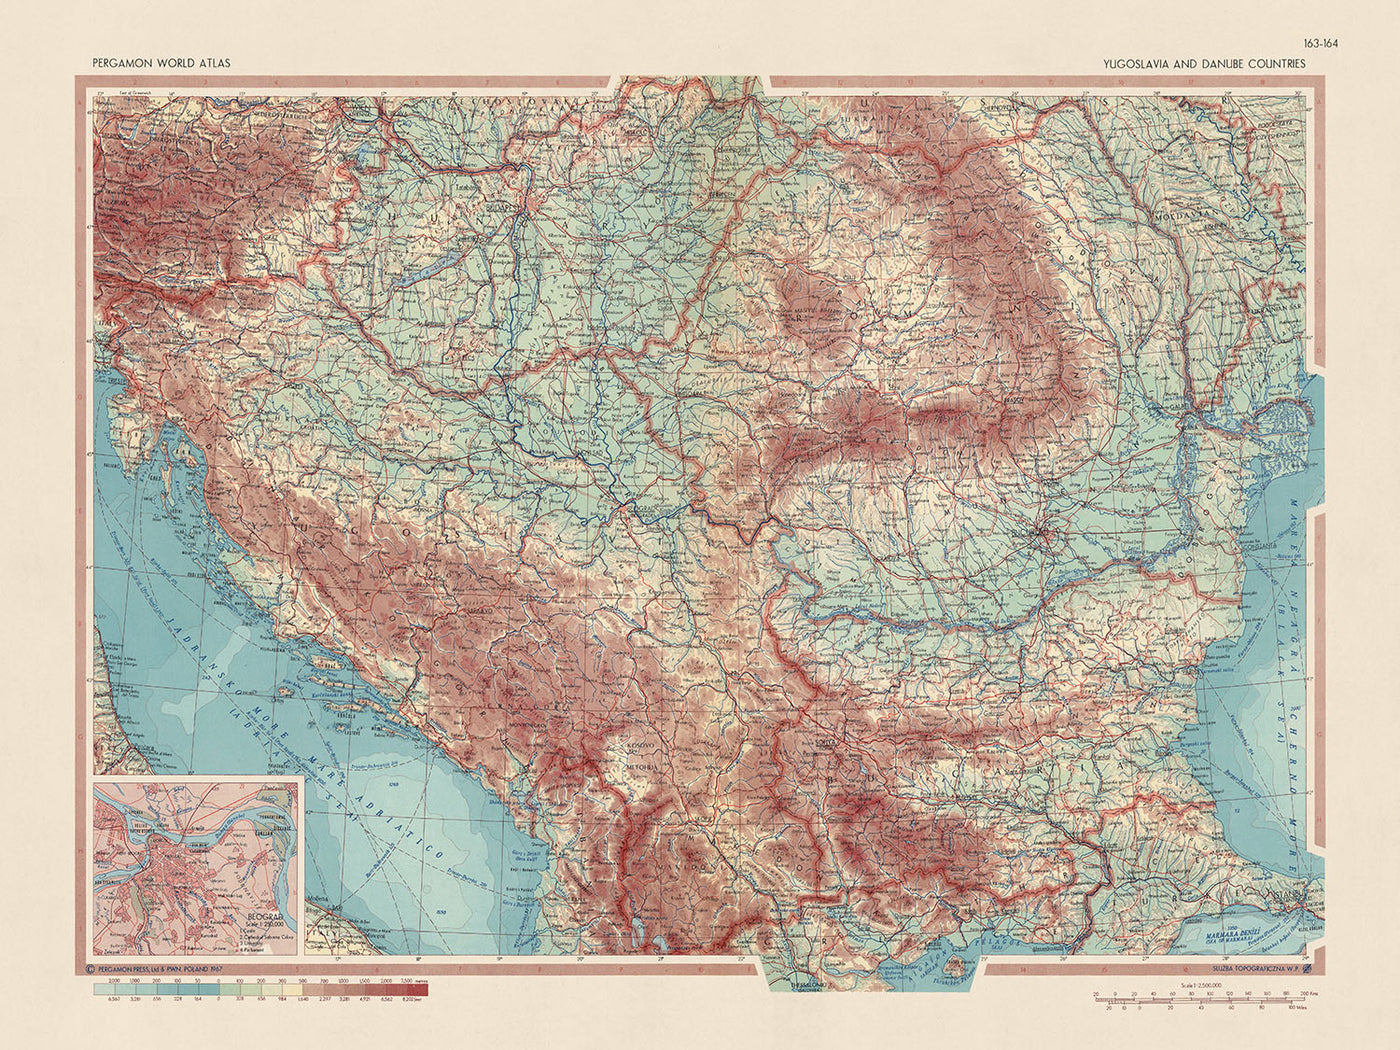 Mapa del Viejo Mundo de Yugoslavia y los países del Danubio realizado por el Servicio de Topografía del Ejército Polaco, 1967: Mapa físico y político detallado, recuadro de Belgrado, proyección de Mercator